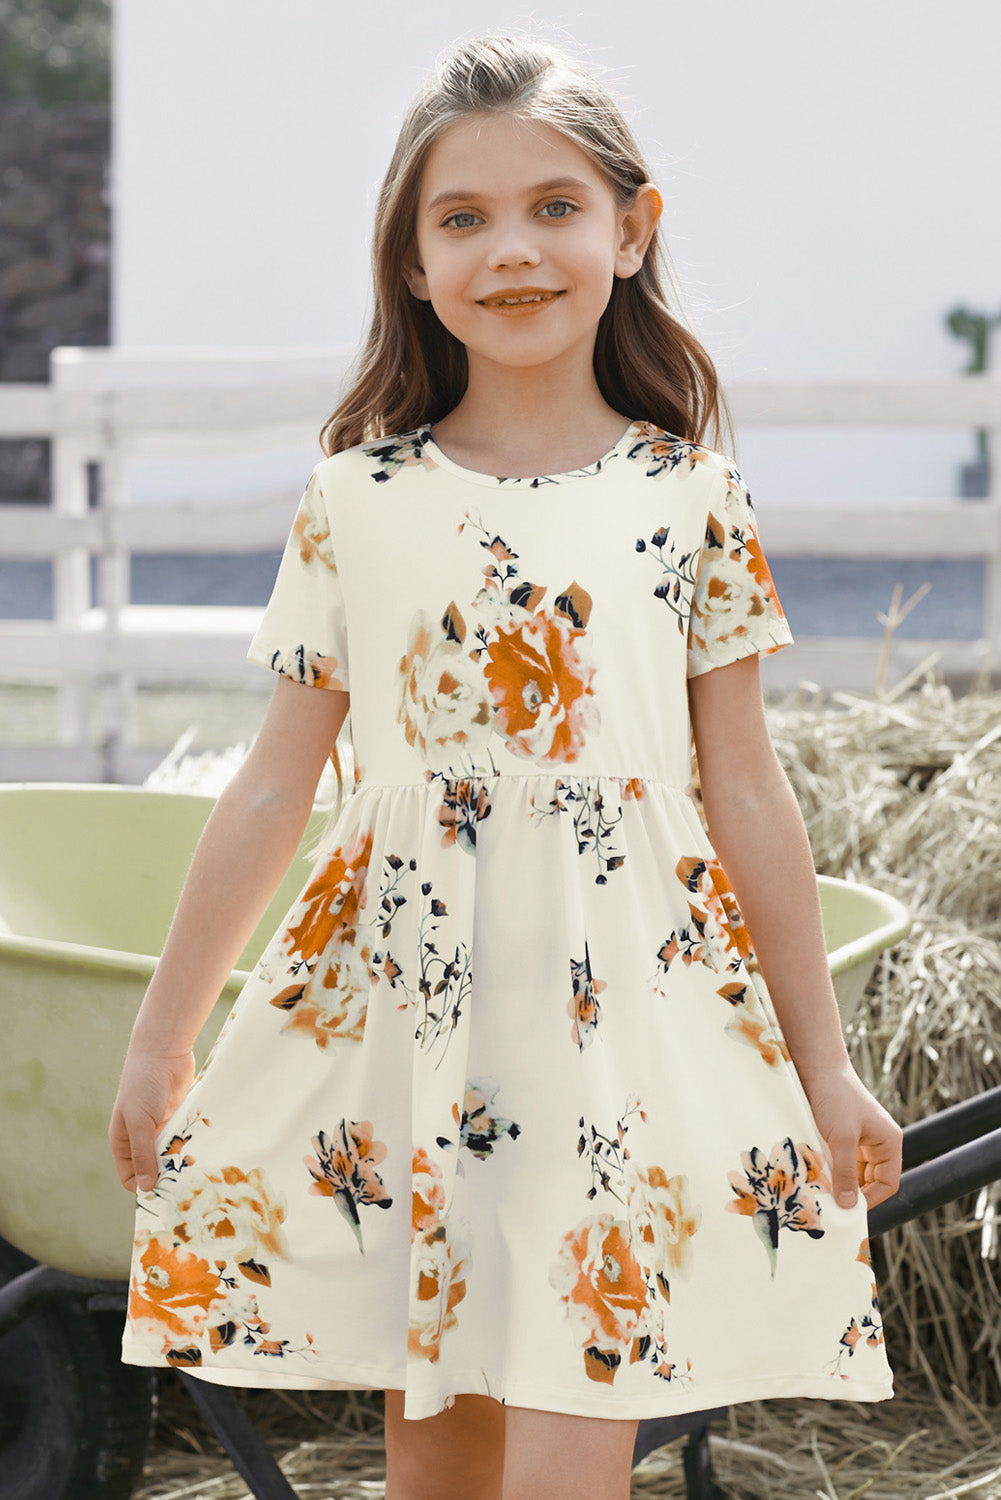 Children’s Girls Floral Short Sleeve Round Neck Dress